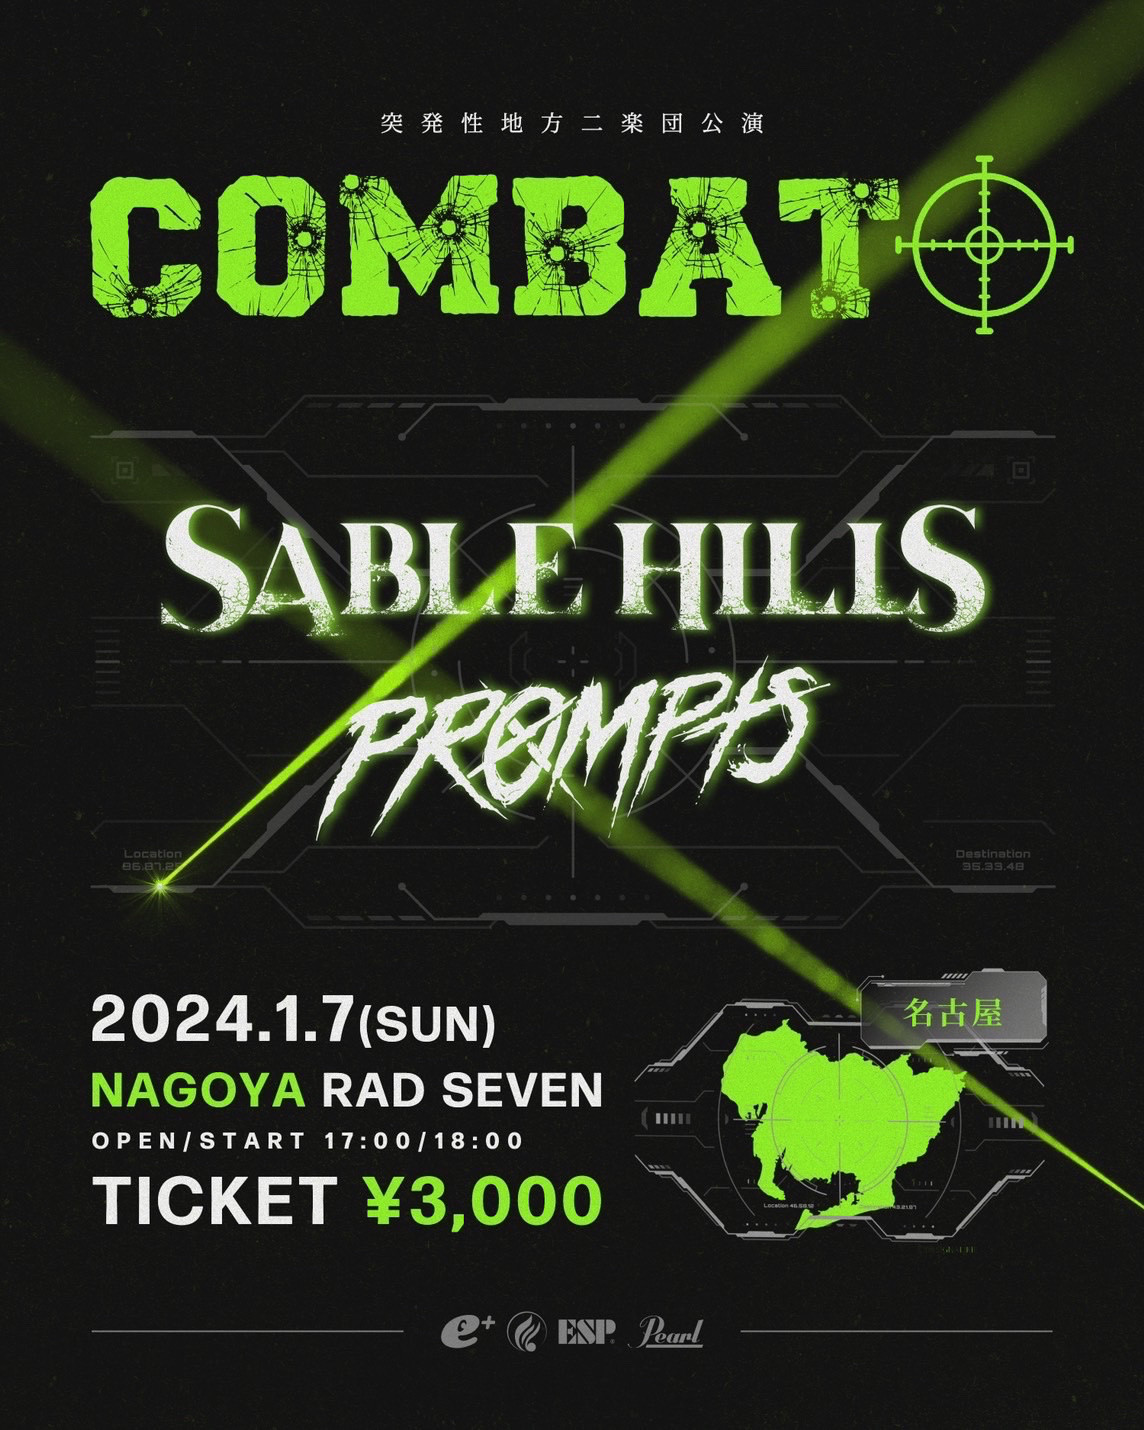 SABLE HILLS Presents Combat!